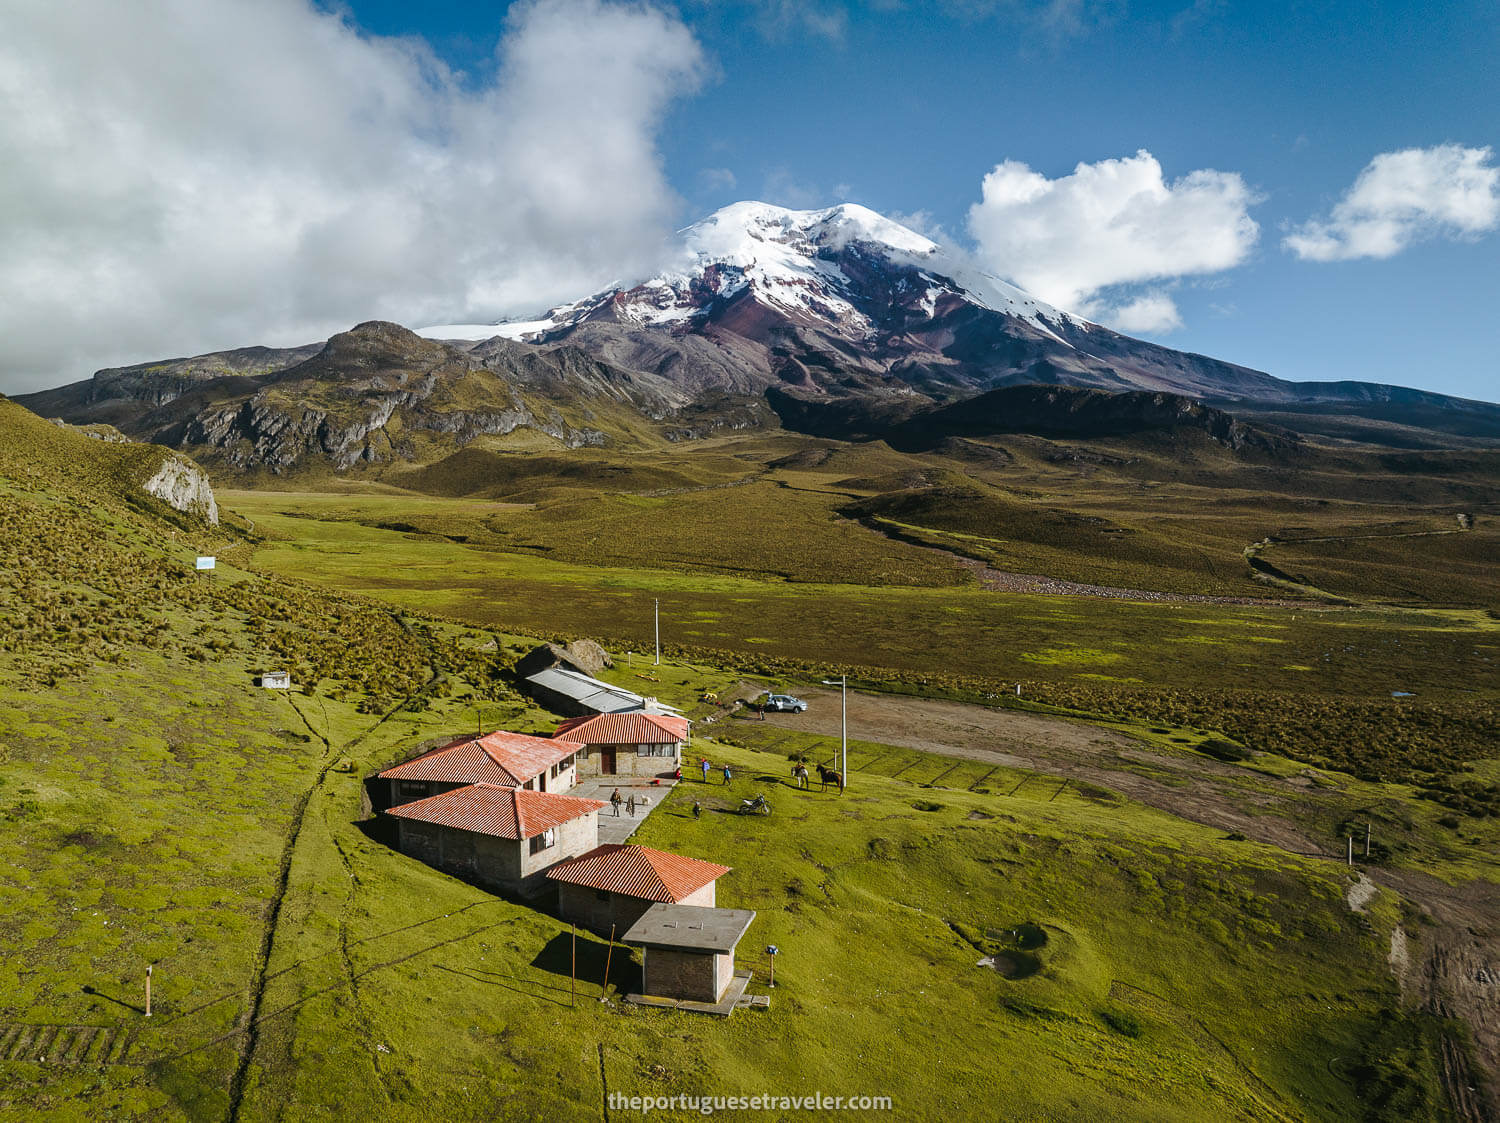 Carihuairazo's Basecamp and Chimborazo Volcano